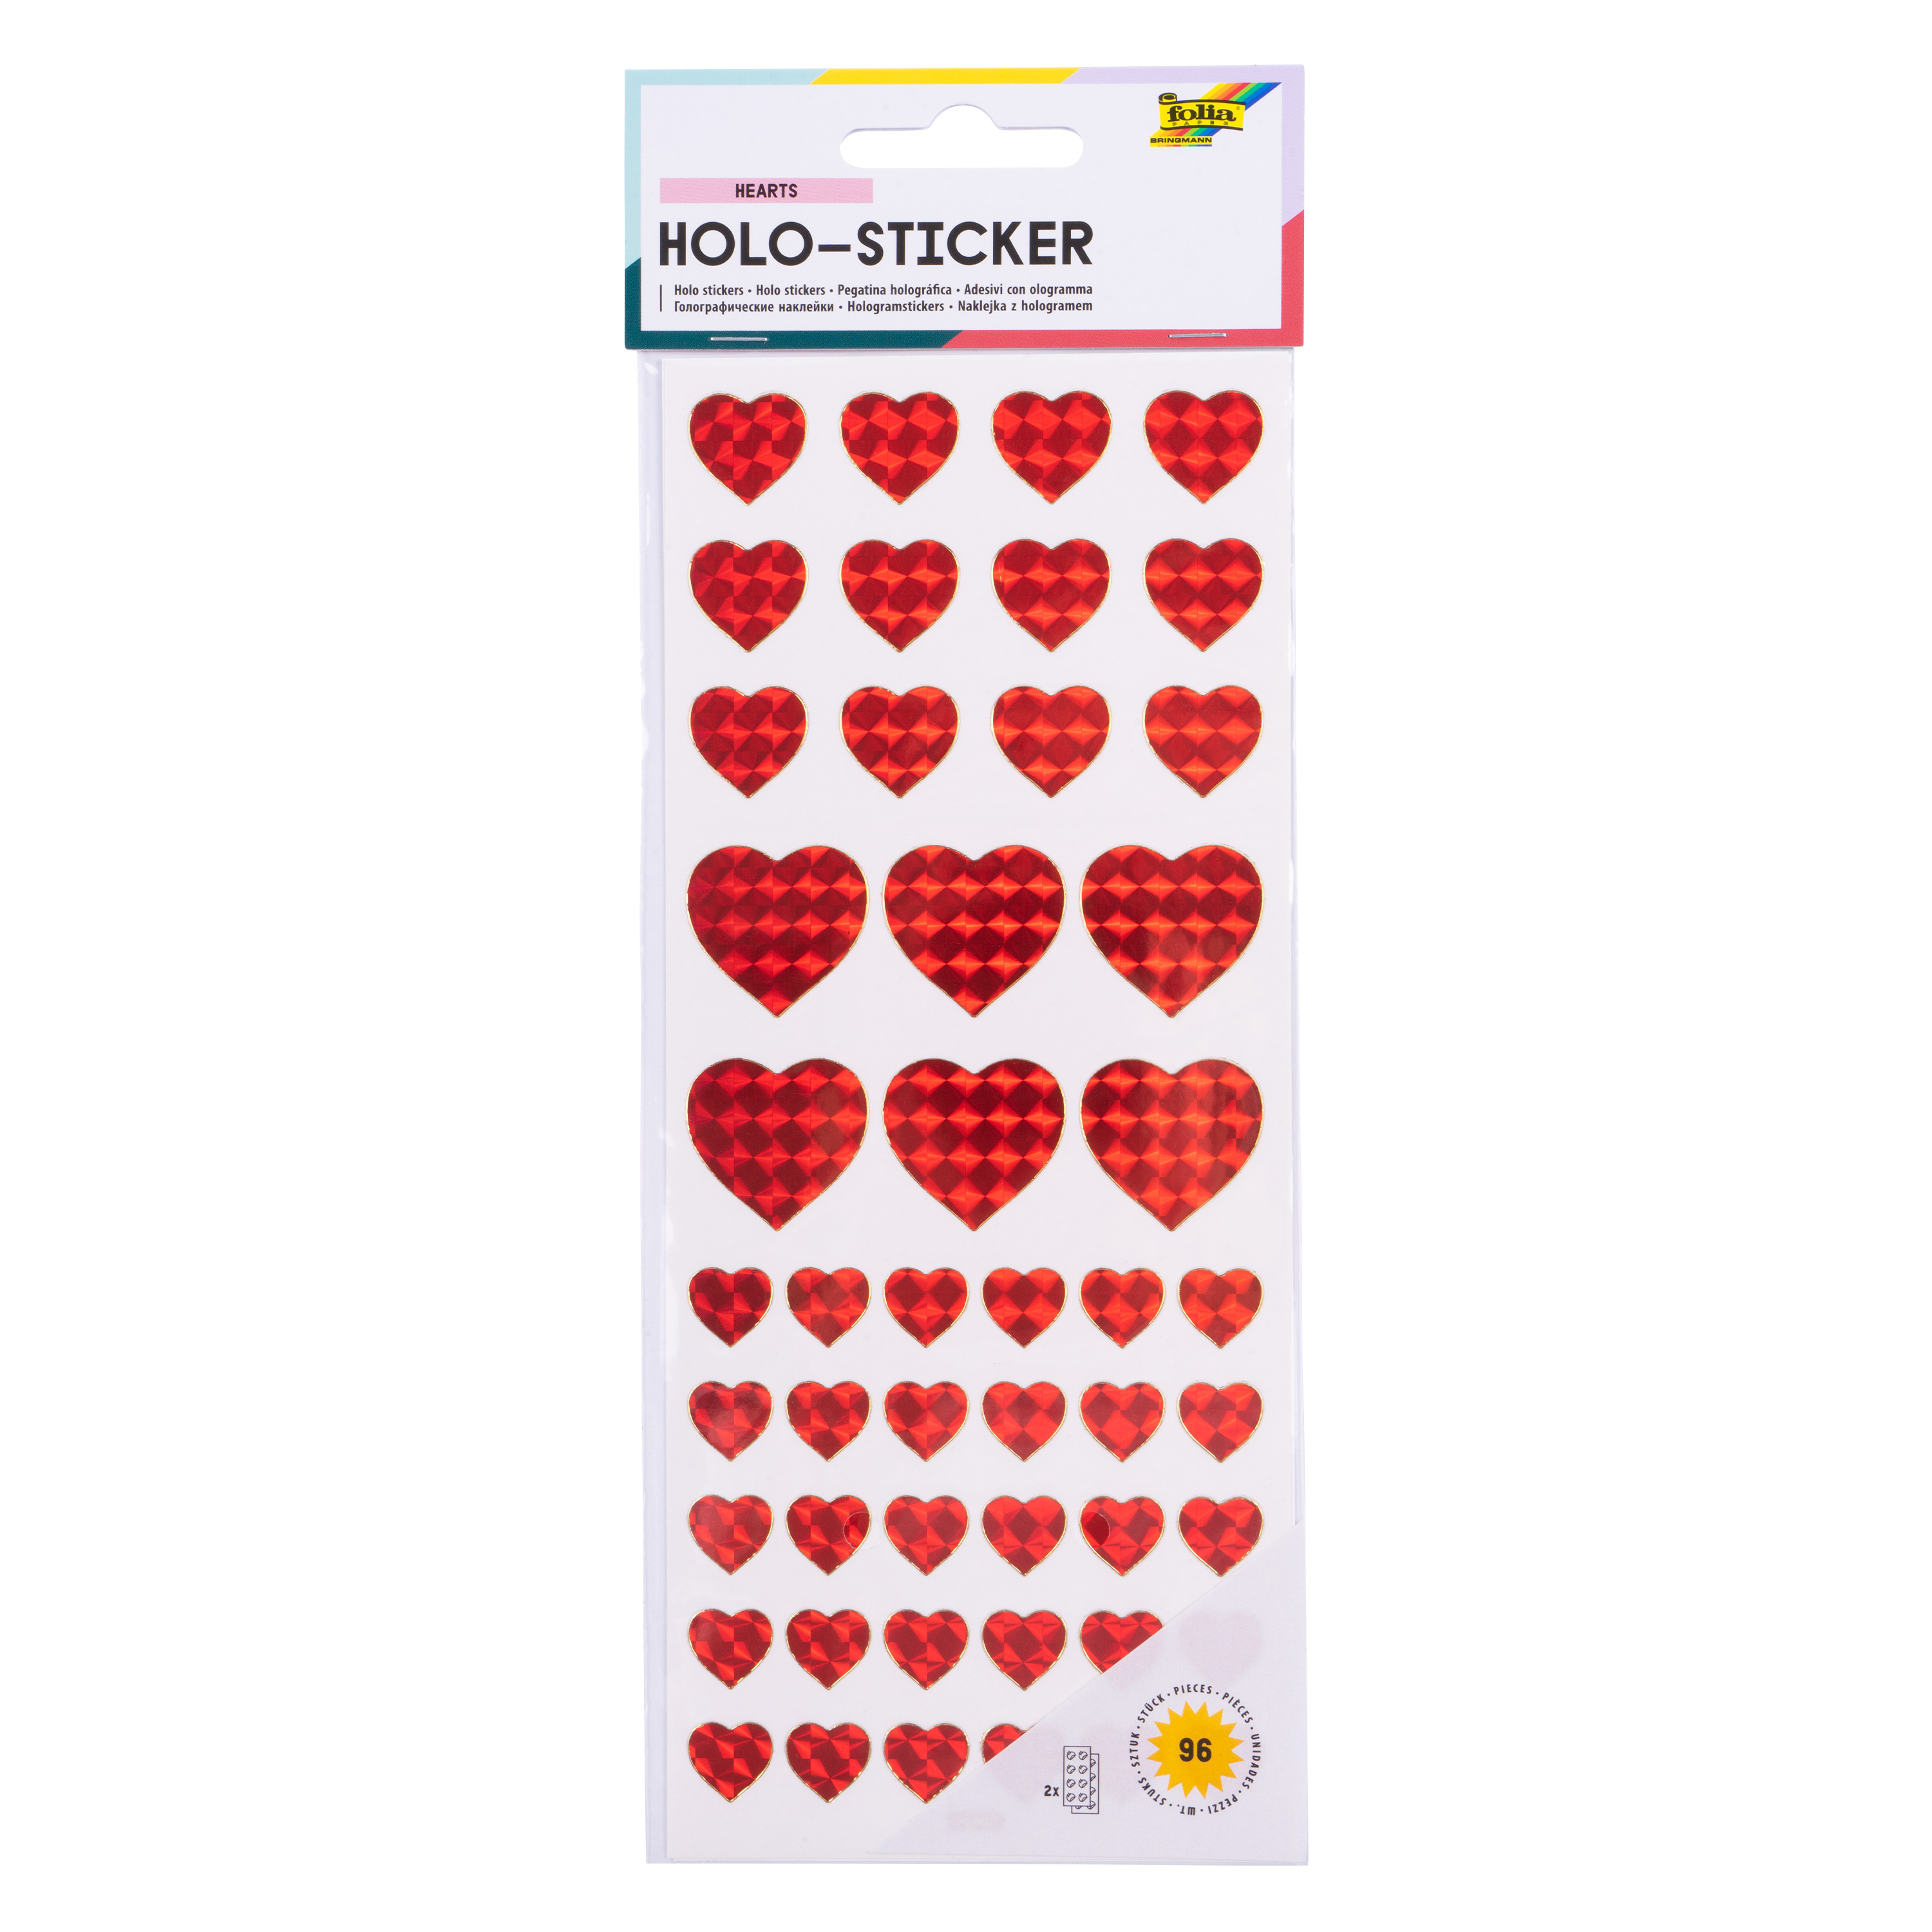 Holo-Sticker 'Herzen - rot & regenbogenfarbig', 96 Sticker